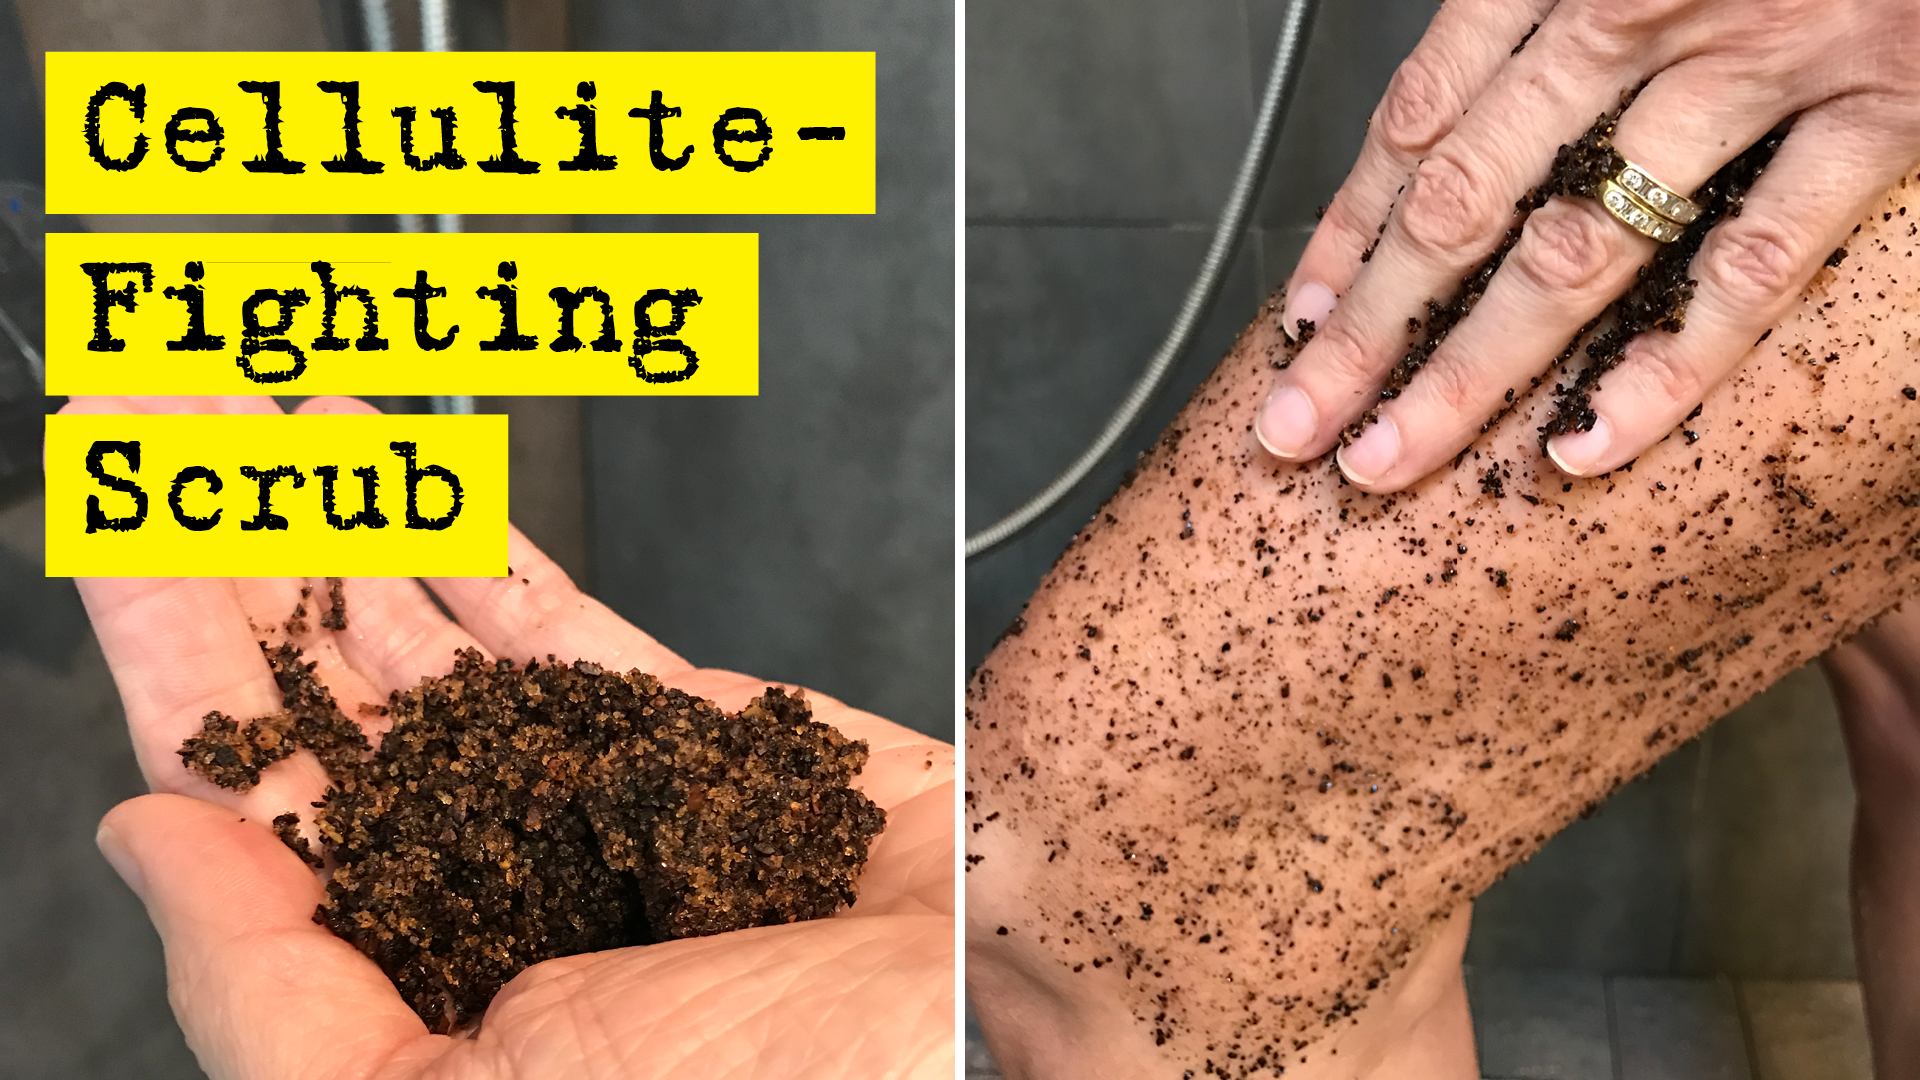 Cellulite-Fighting Coffee And Sugar Scrub Recipe by DIY Presto!